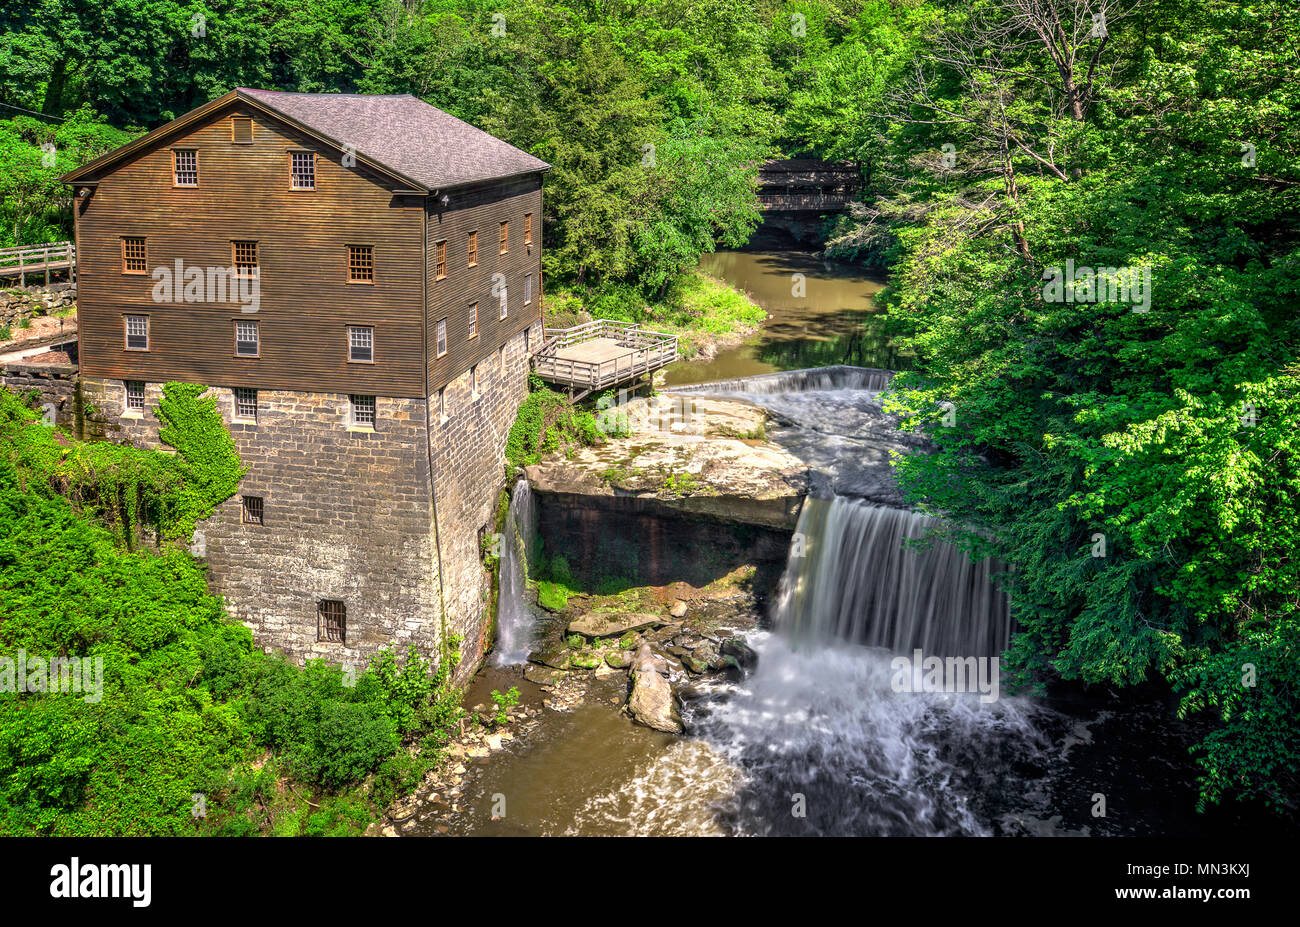 L'historique de l'usine d'Lanterman Mill Creek Park à Youngstown dans l'Ohio. Construit en 1845 et restauré en 1982-1985. Le moulin fonctionne encore aujourd'hui. Banque D'Images